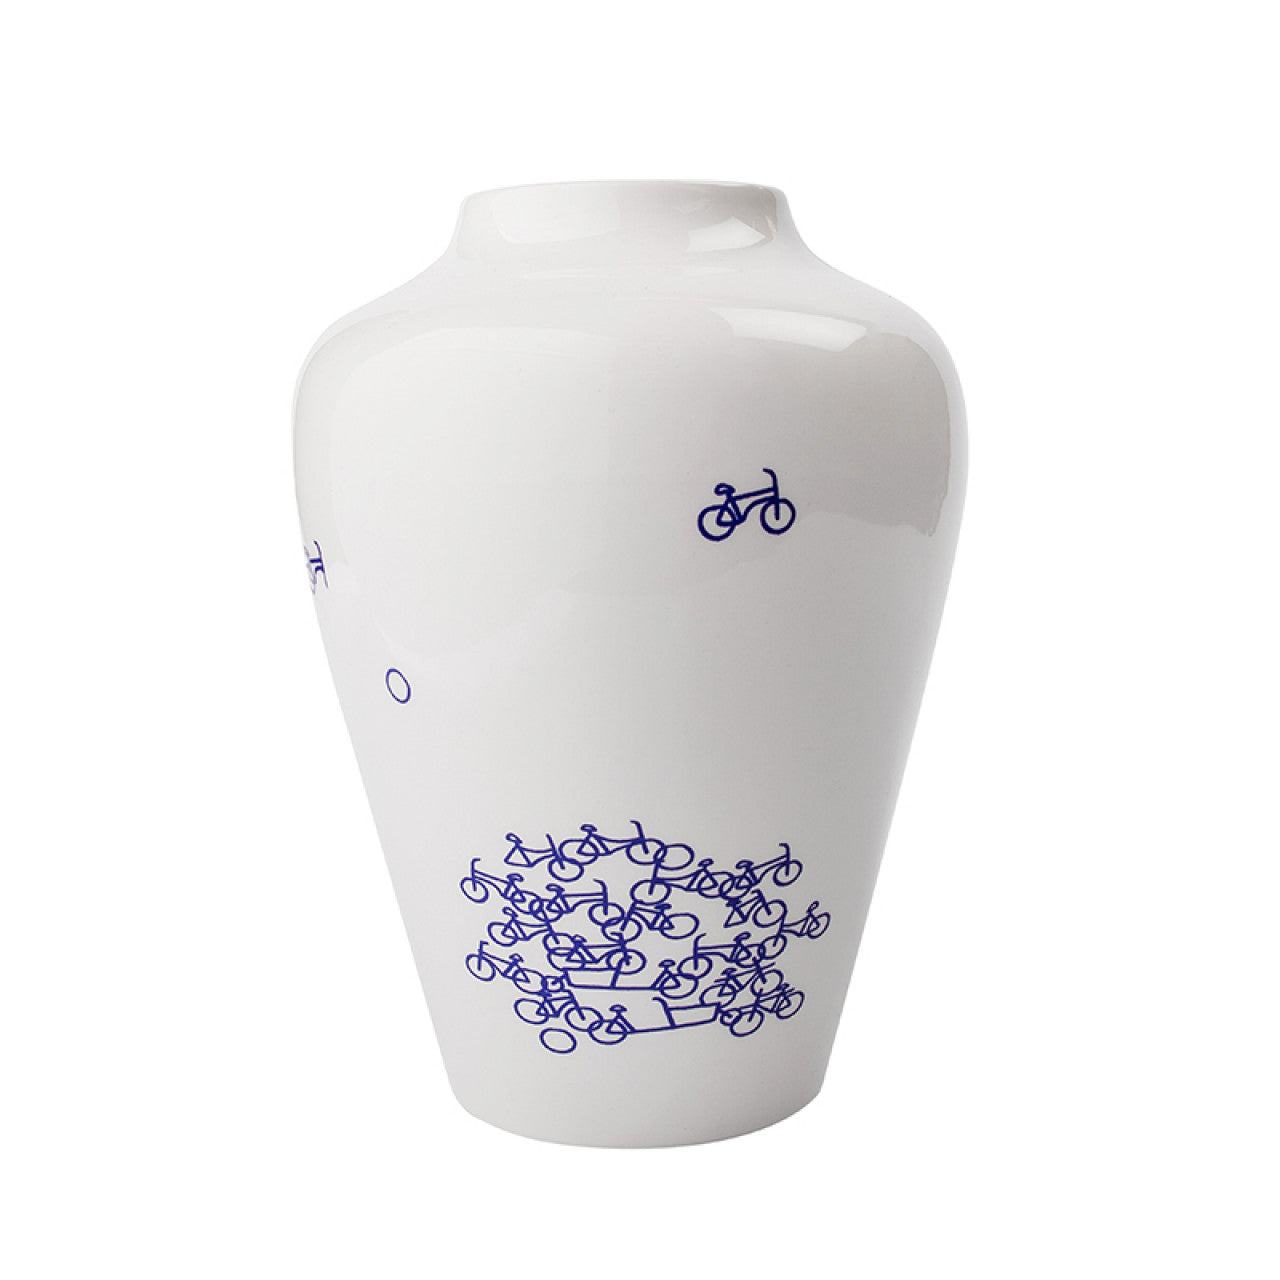 De Blauwe Fietsvaas Nr. 2 - een witte keramische vaas versierd met blauwe fietsjes, 21 cm hoog, ideaal voor bloemen of als decoratief stuk, geleverd in een geschenkverpakking